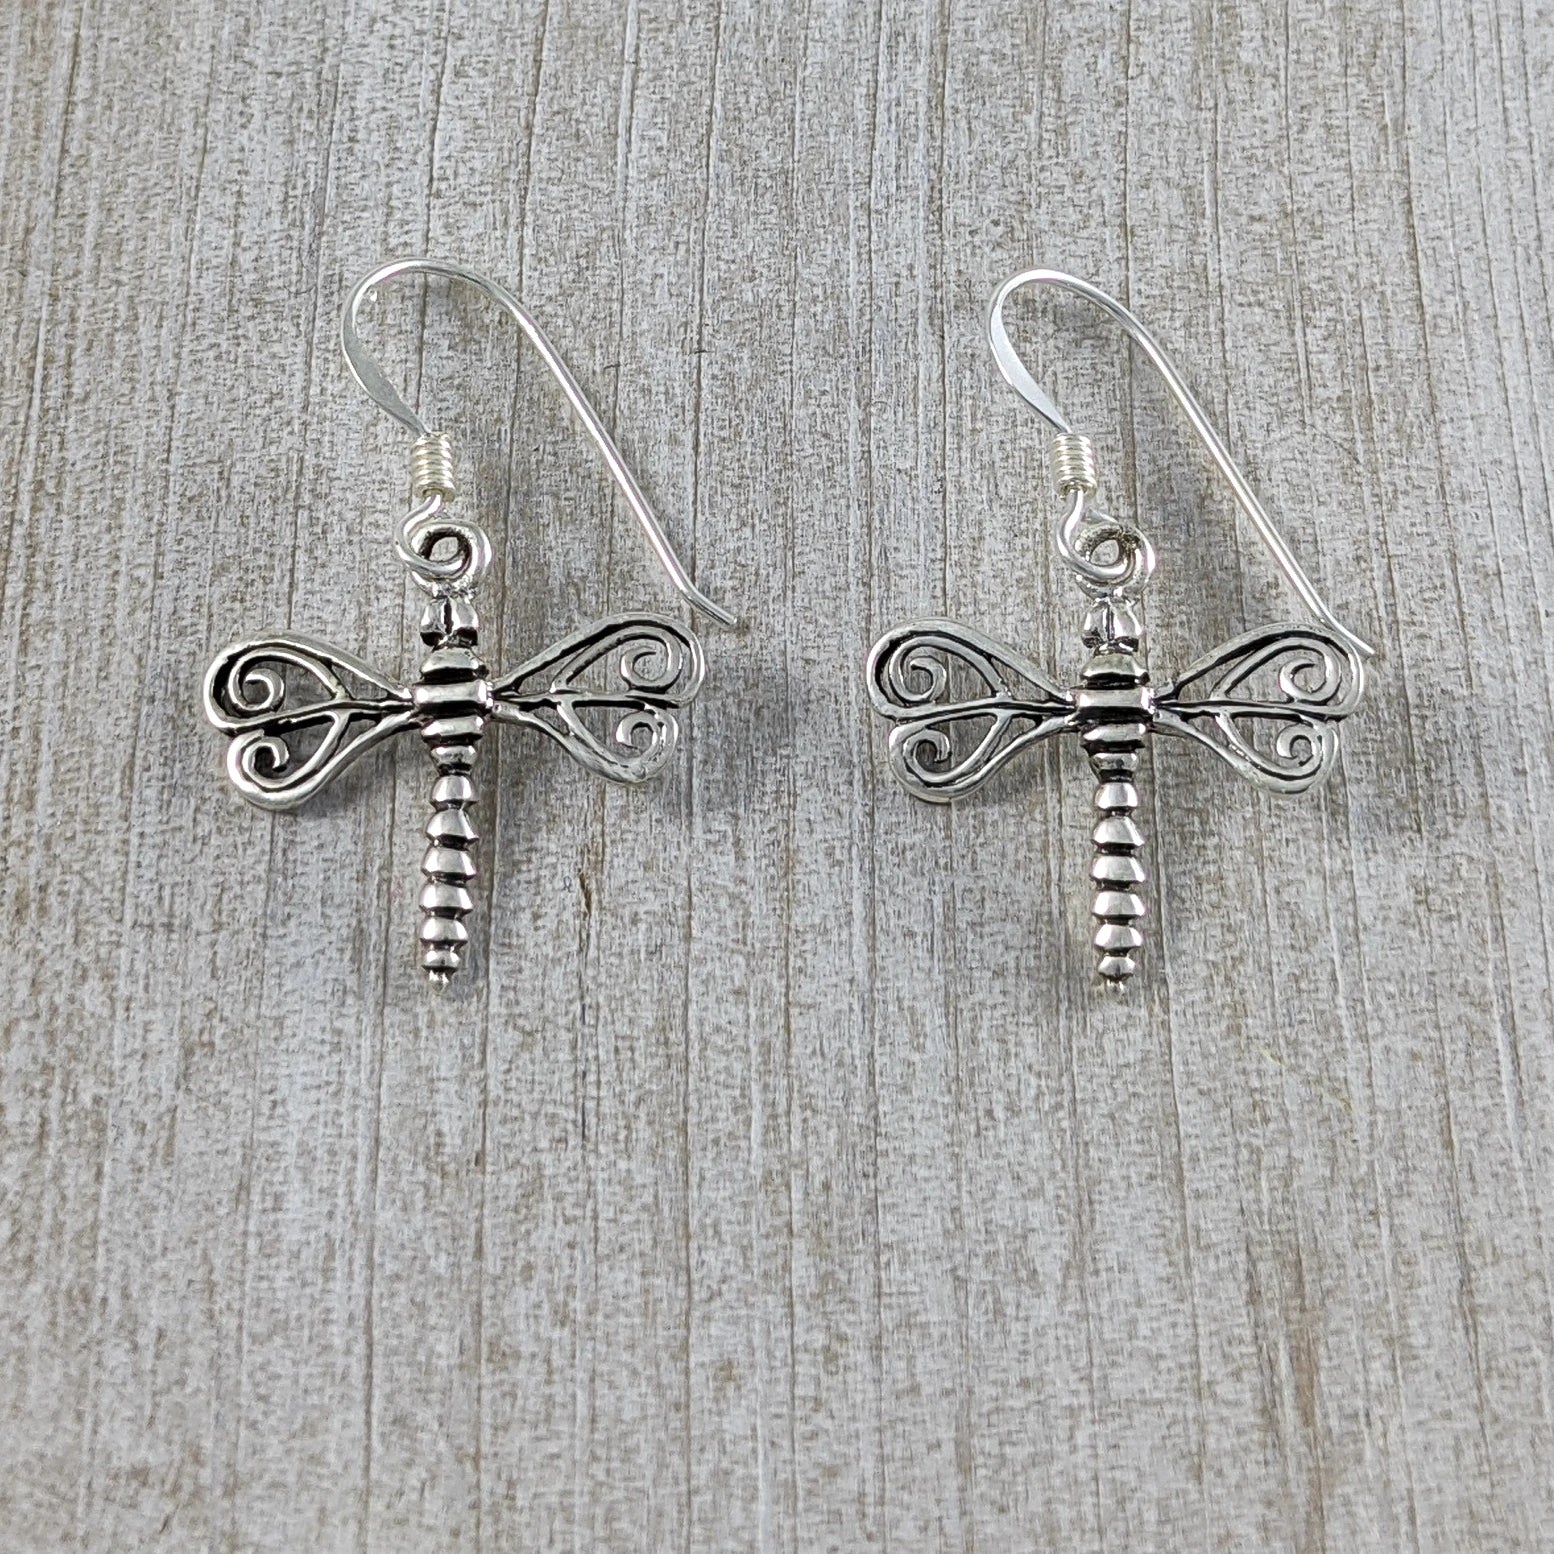 Dragonfly Earrings with Swirl Wings